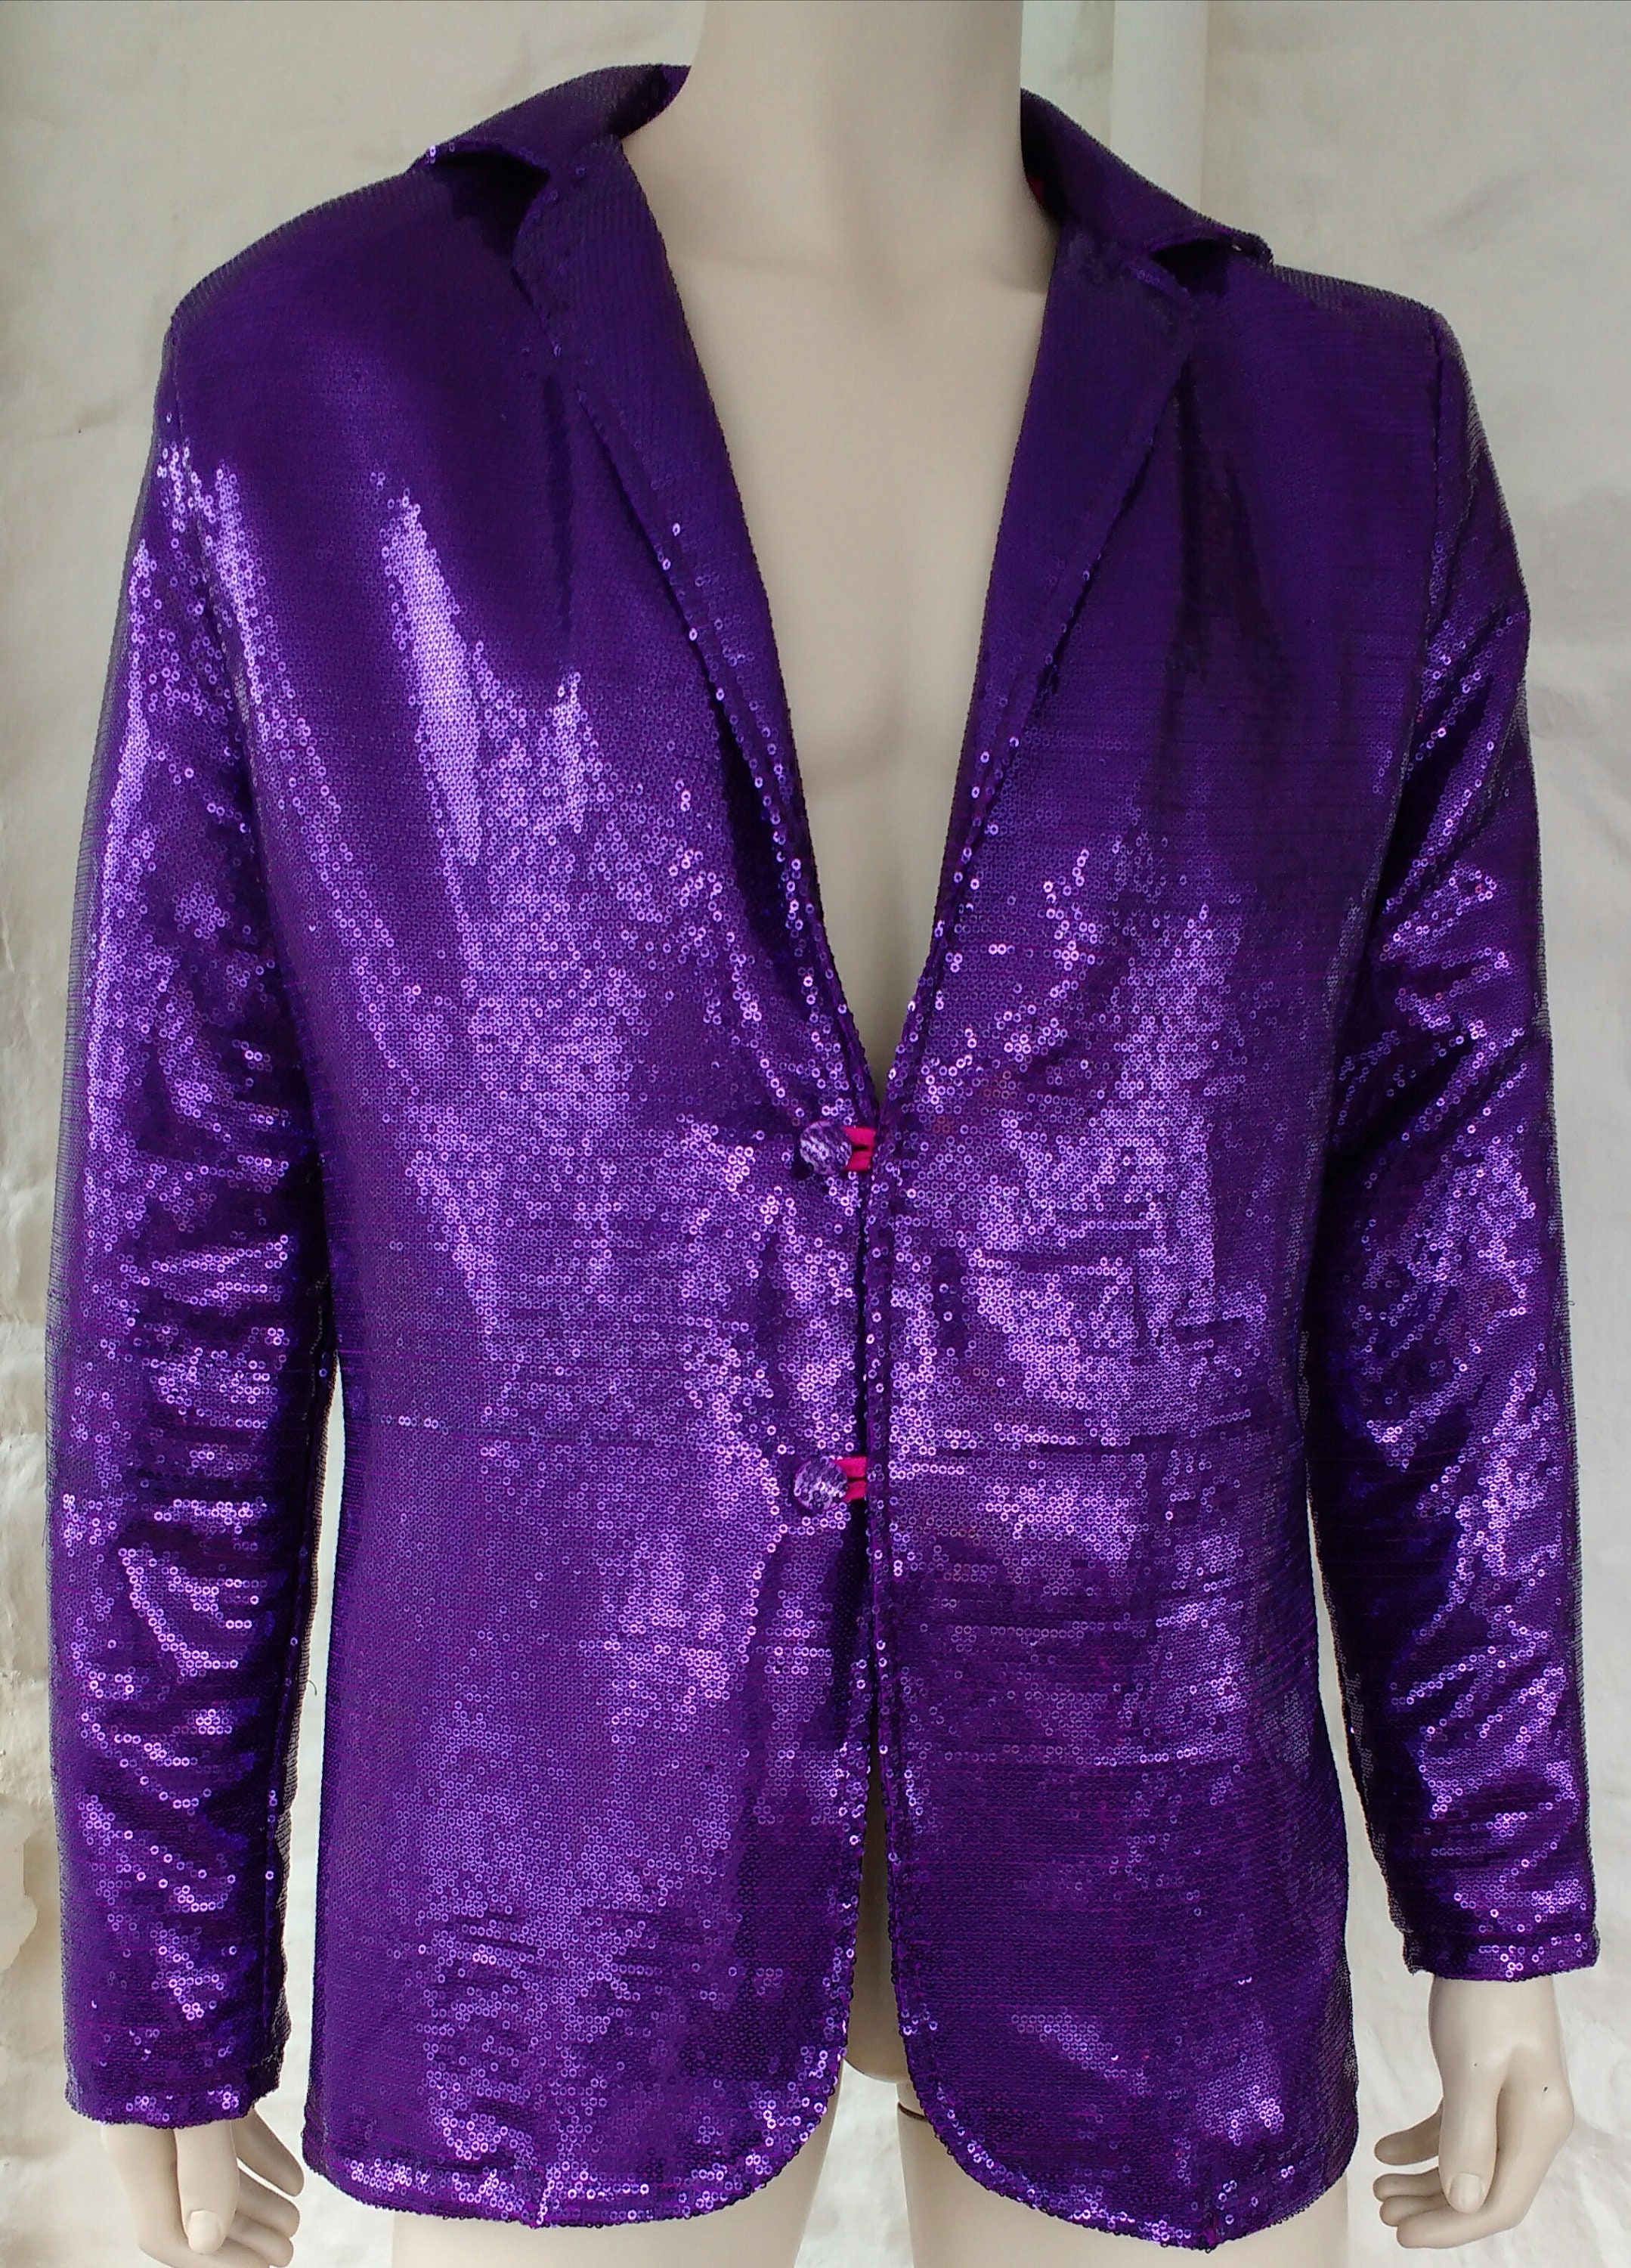 Pre-owned Black/purple Sequin Embellished Tweed Jacket S